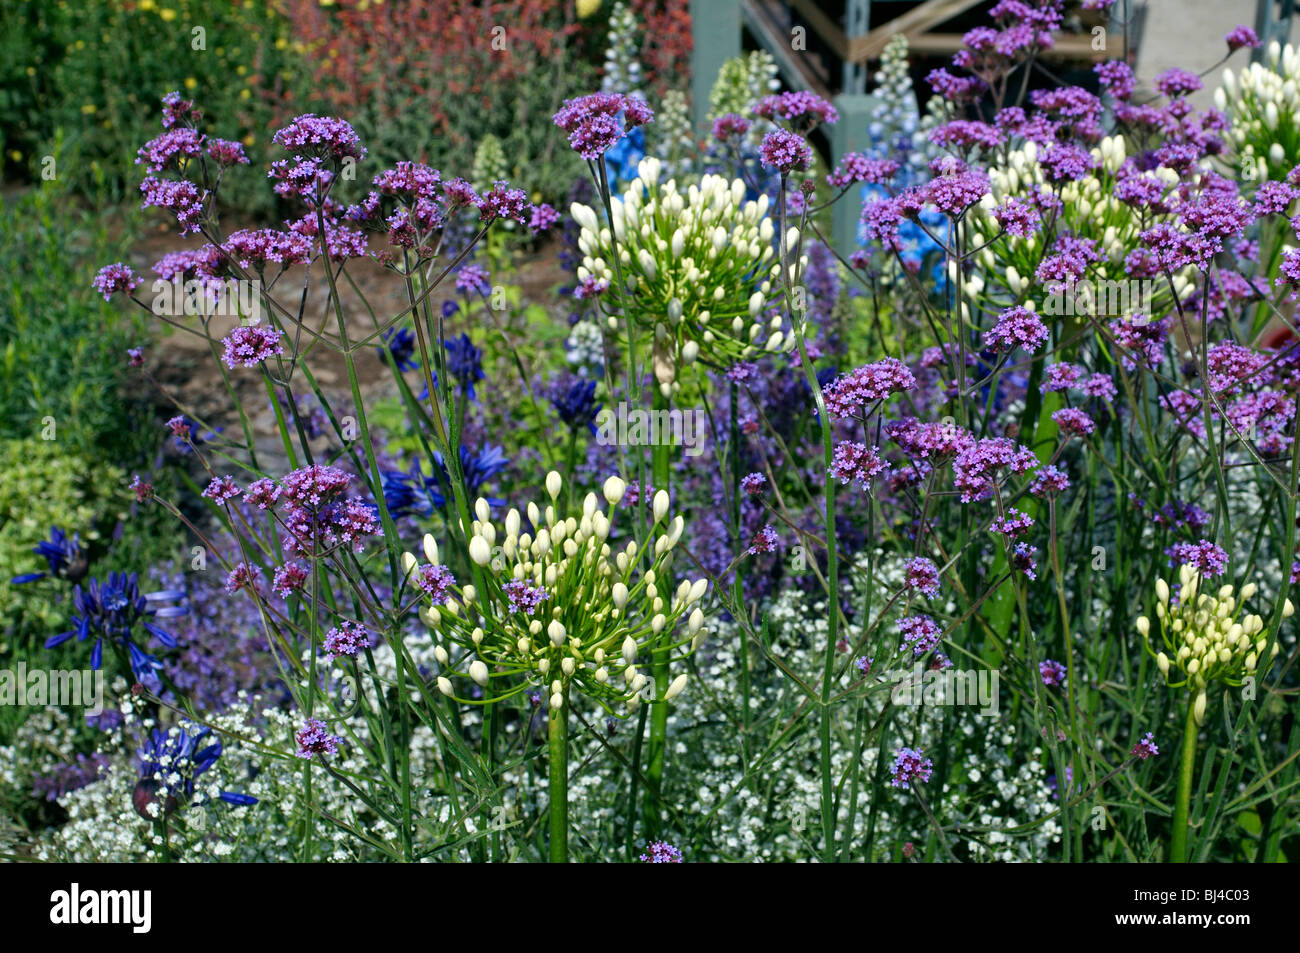 english country garden stock photos & english country garden stock